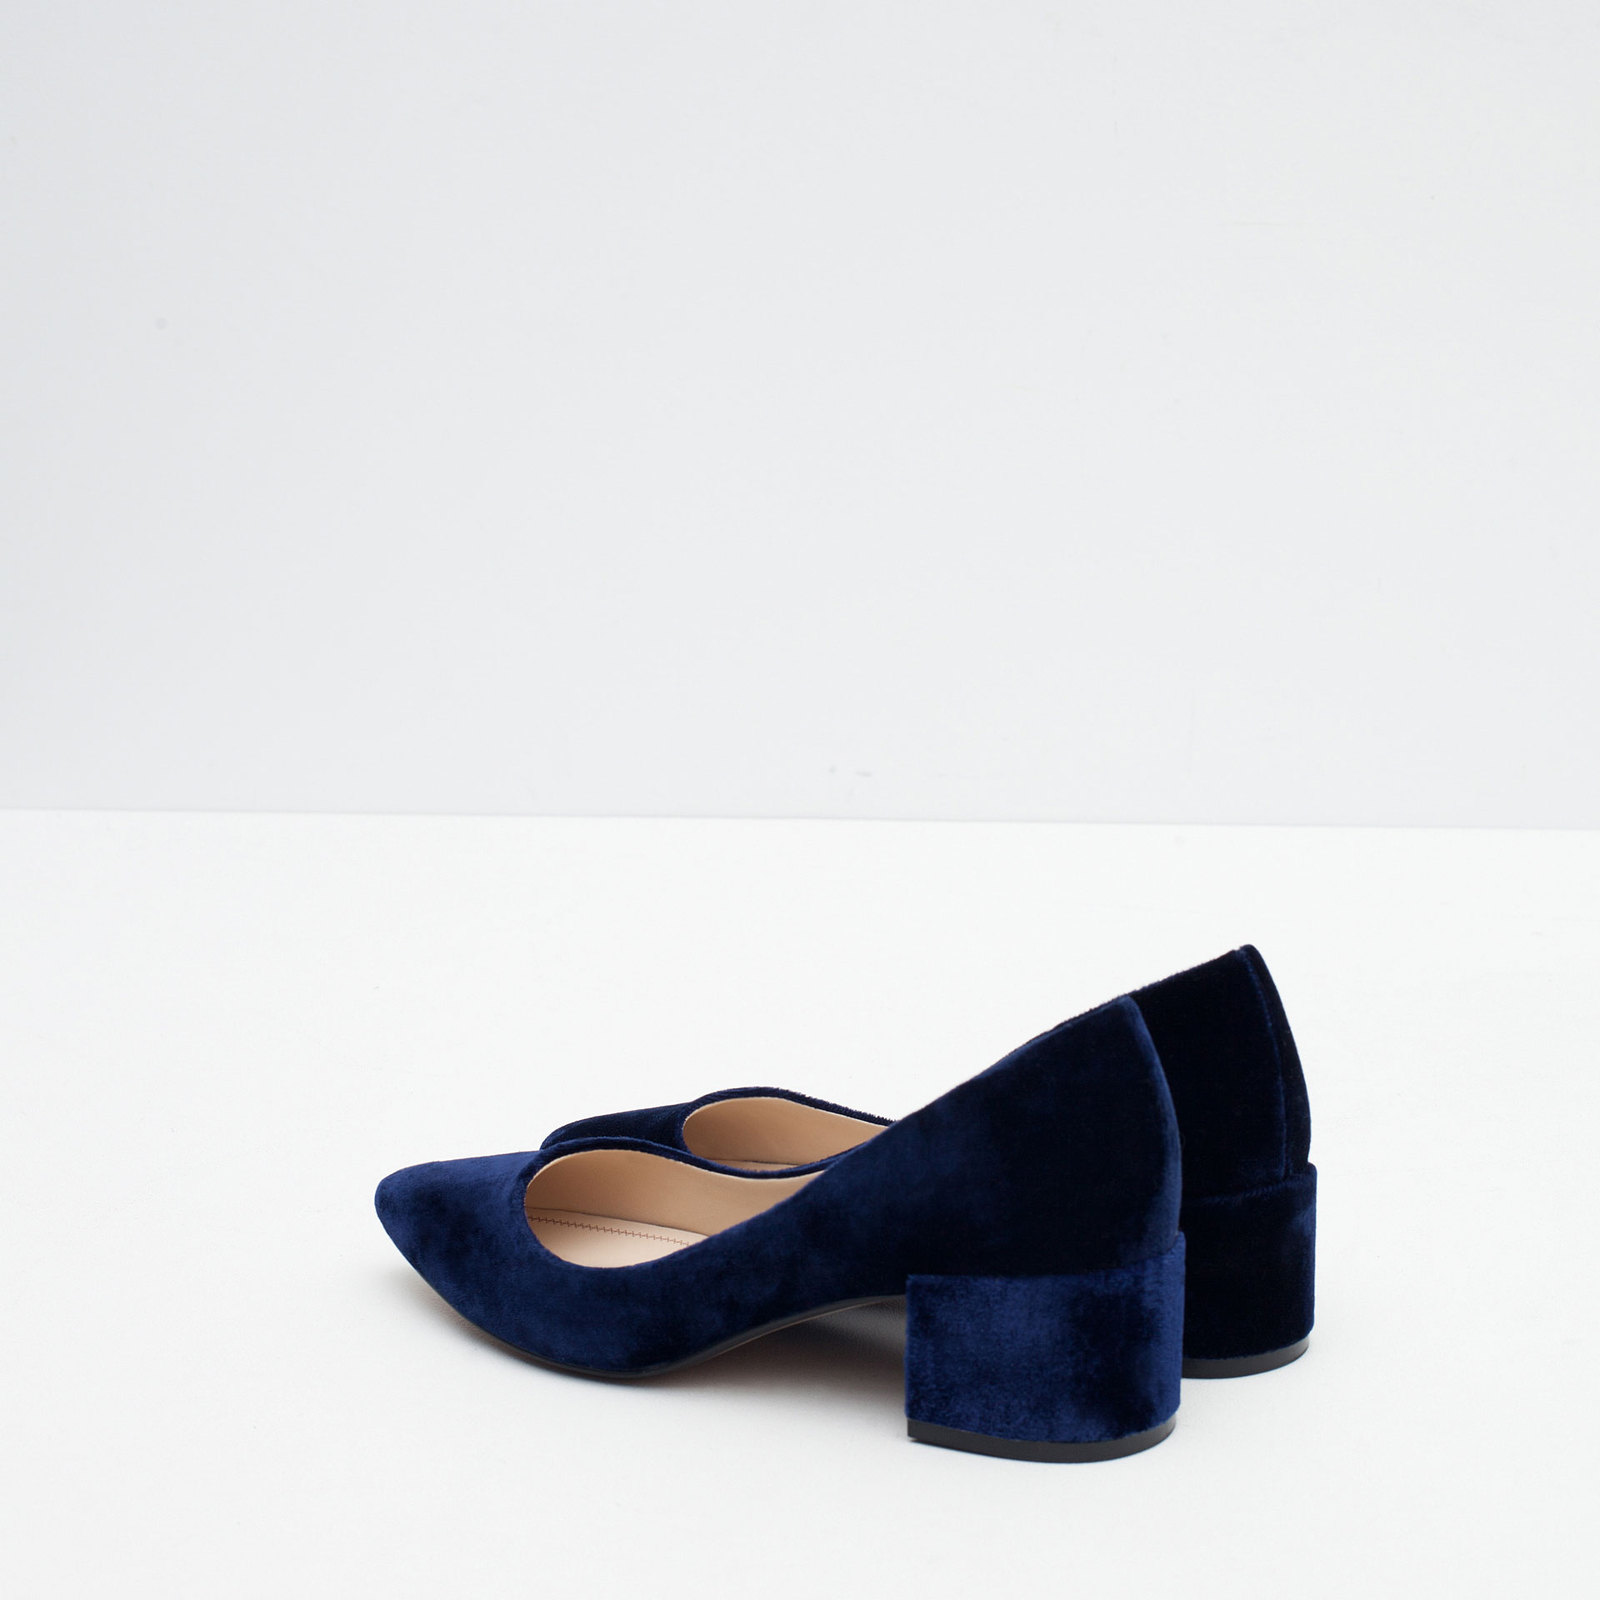 Zara kék női bársony cipő 2015.10.15 fotója